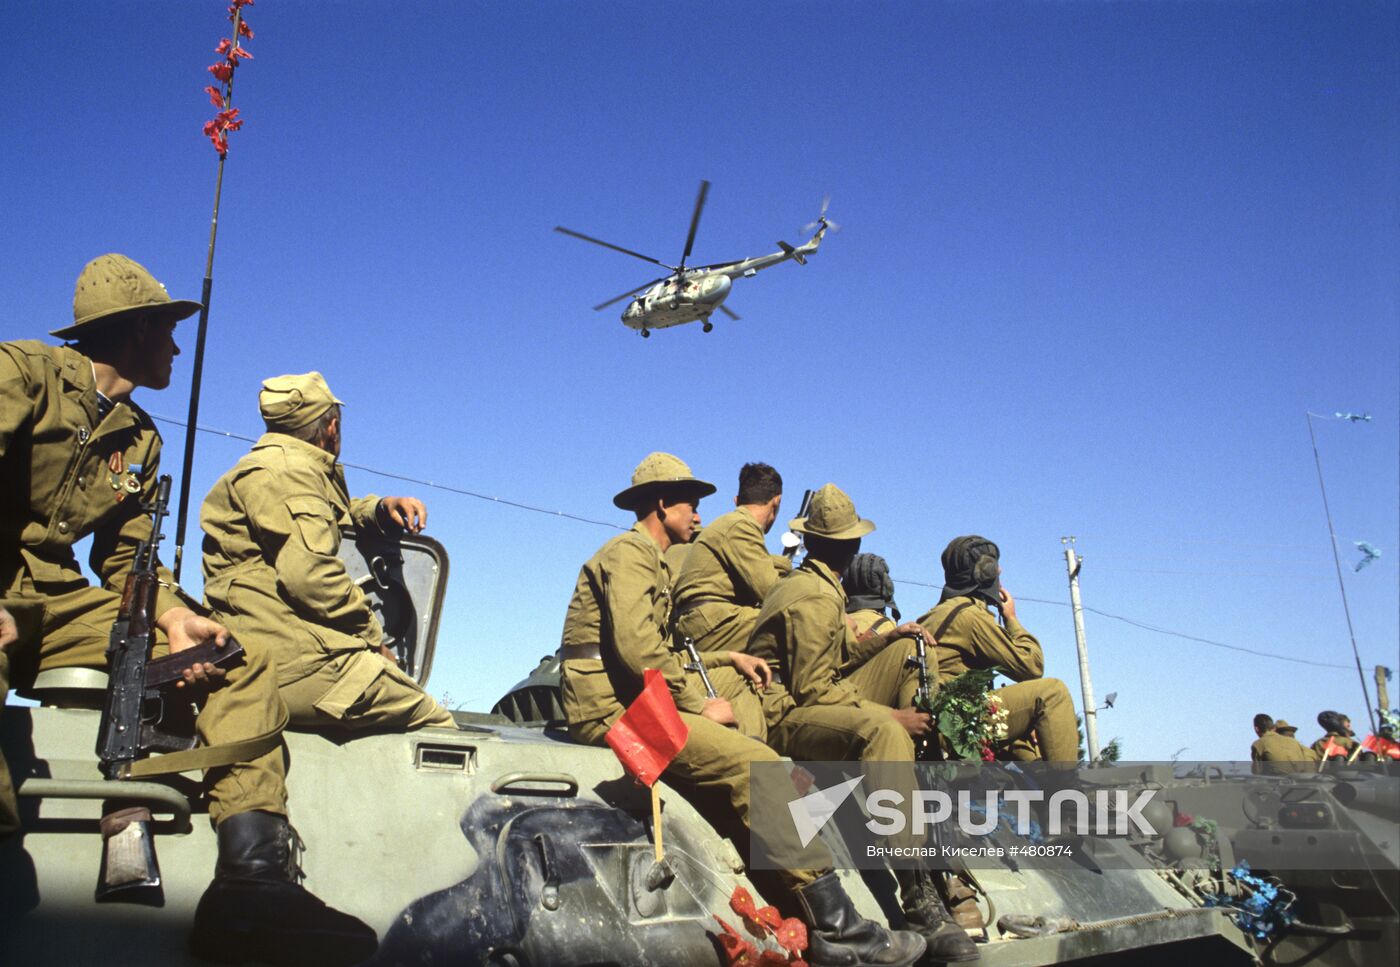 Soviet troops return from Afghanistan